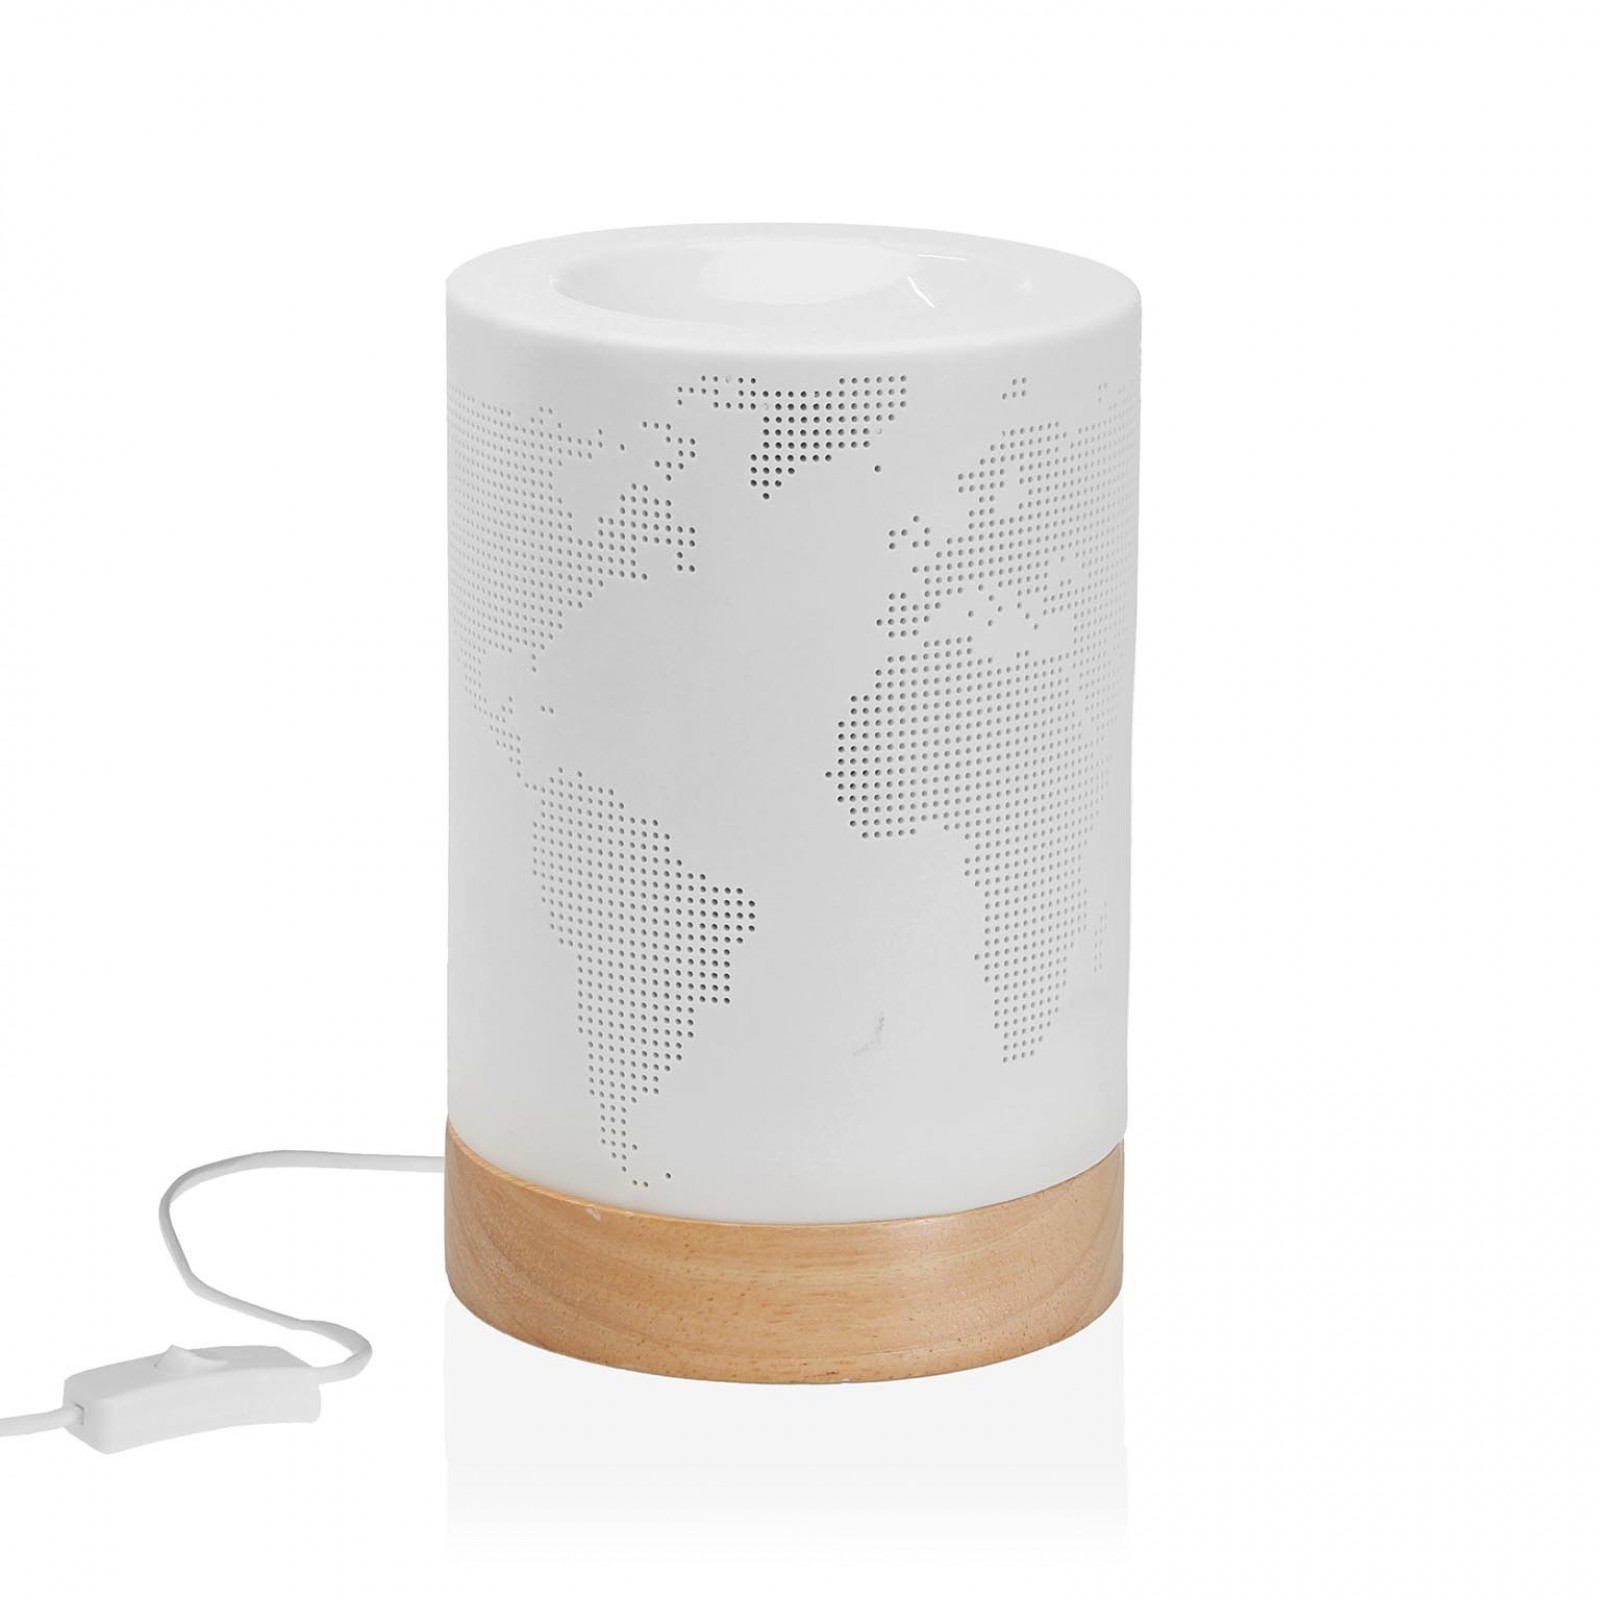 World Map Porcelain Table Lamp (White) - Versa